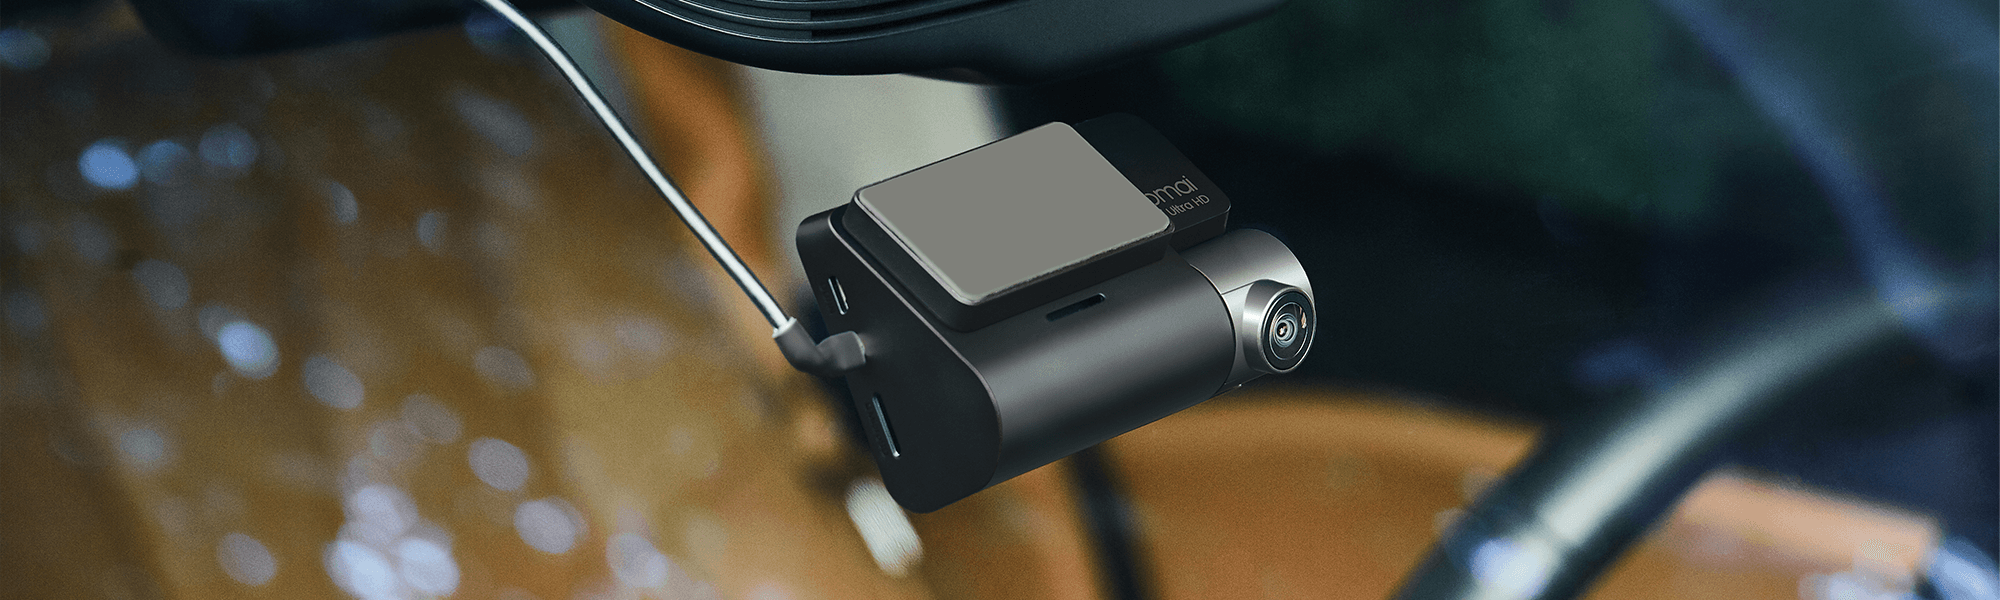 70mai Dash Cam Omni X200 avec 4G Hardwire Kit UP04，Caméra de voiture noire  avec câble